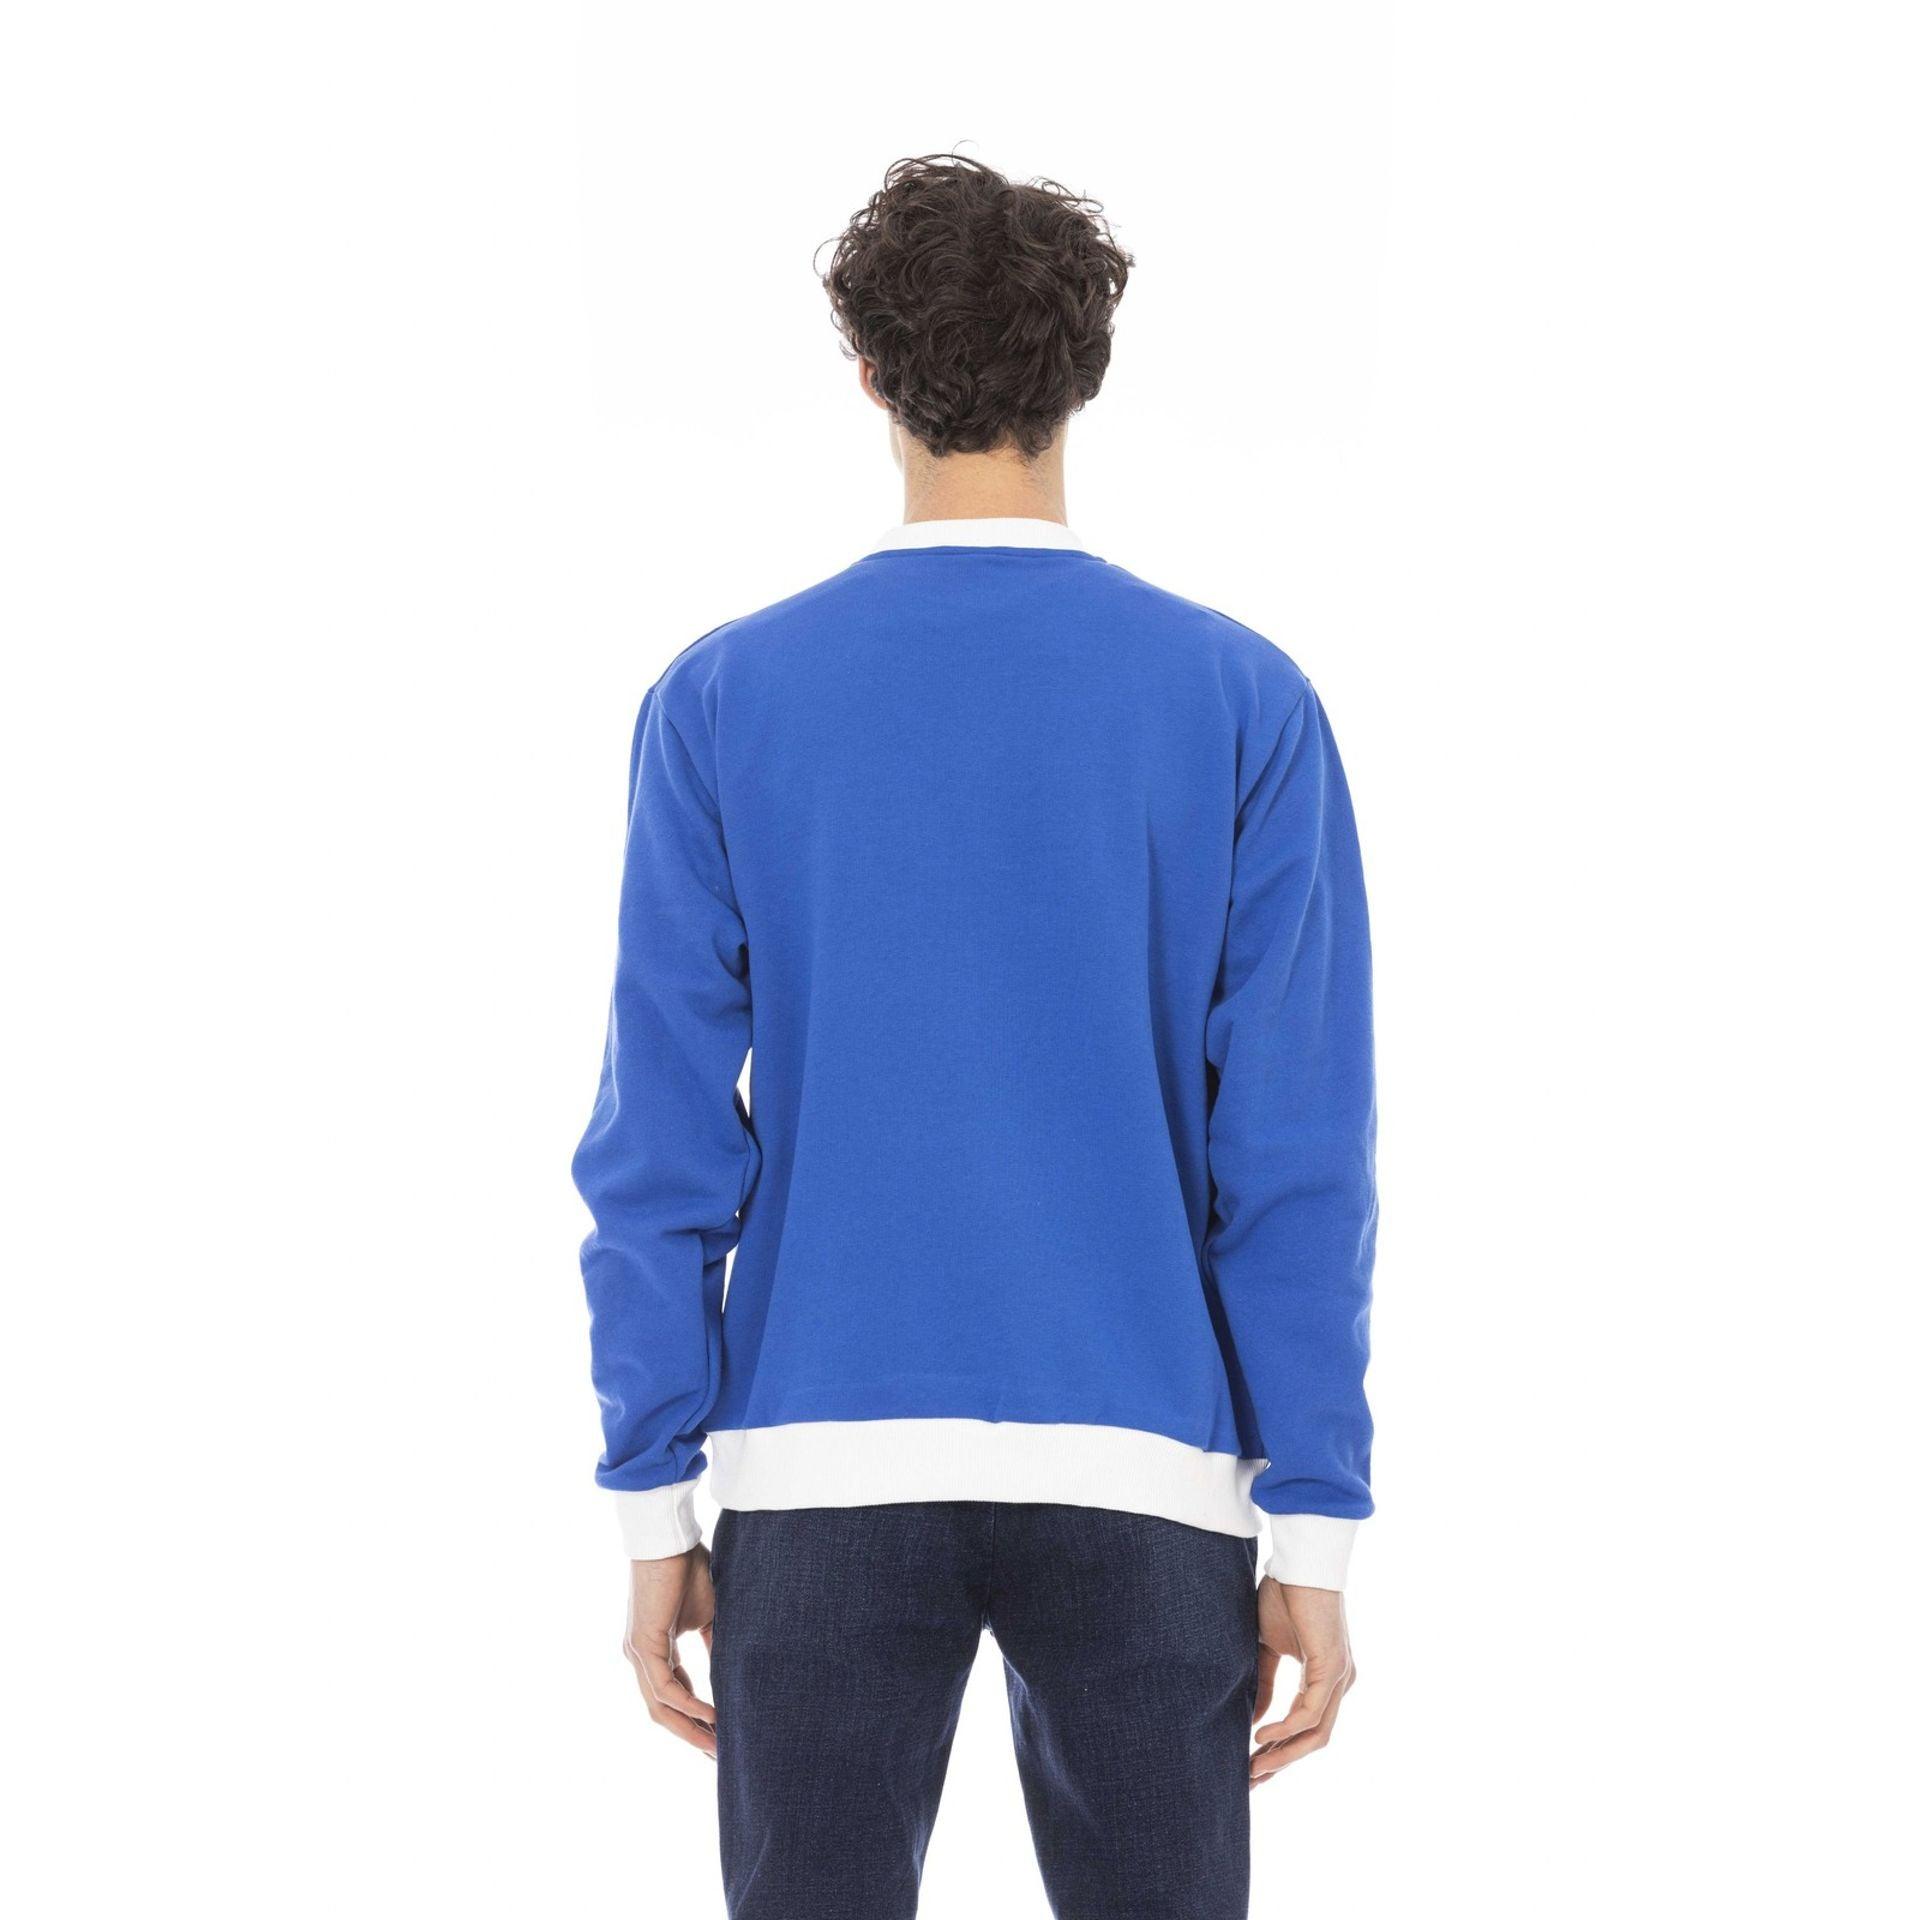 Baldinini Trend Men Sweatshirts - Sweatshirts - Guocali